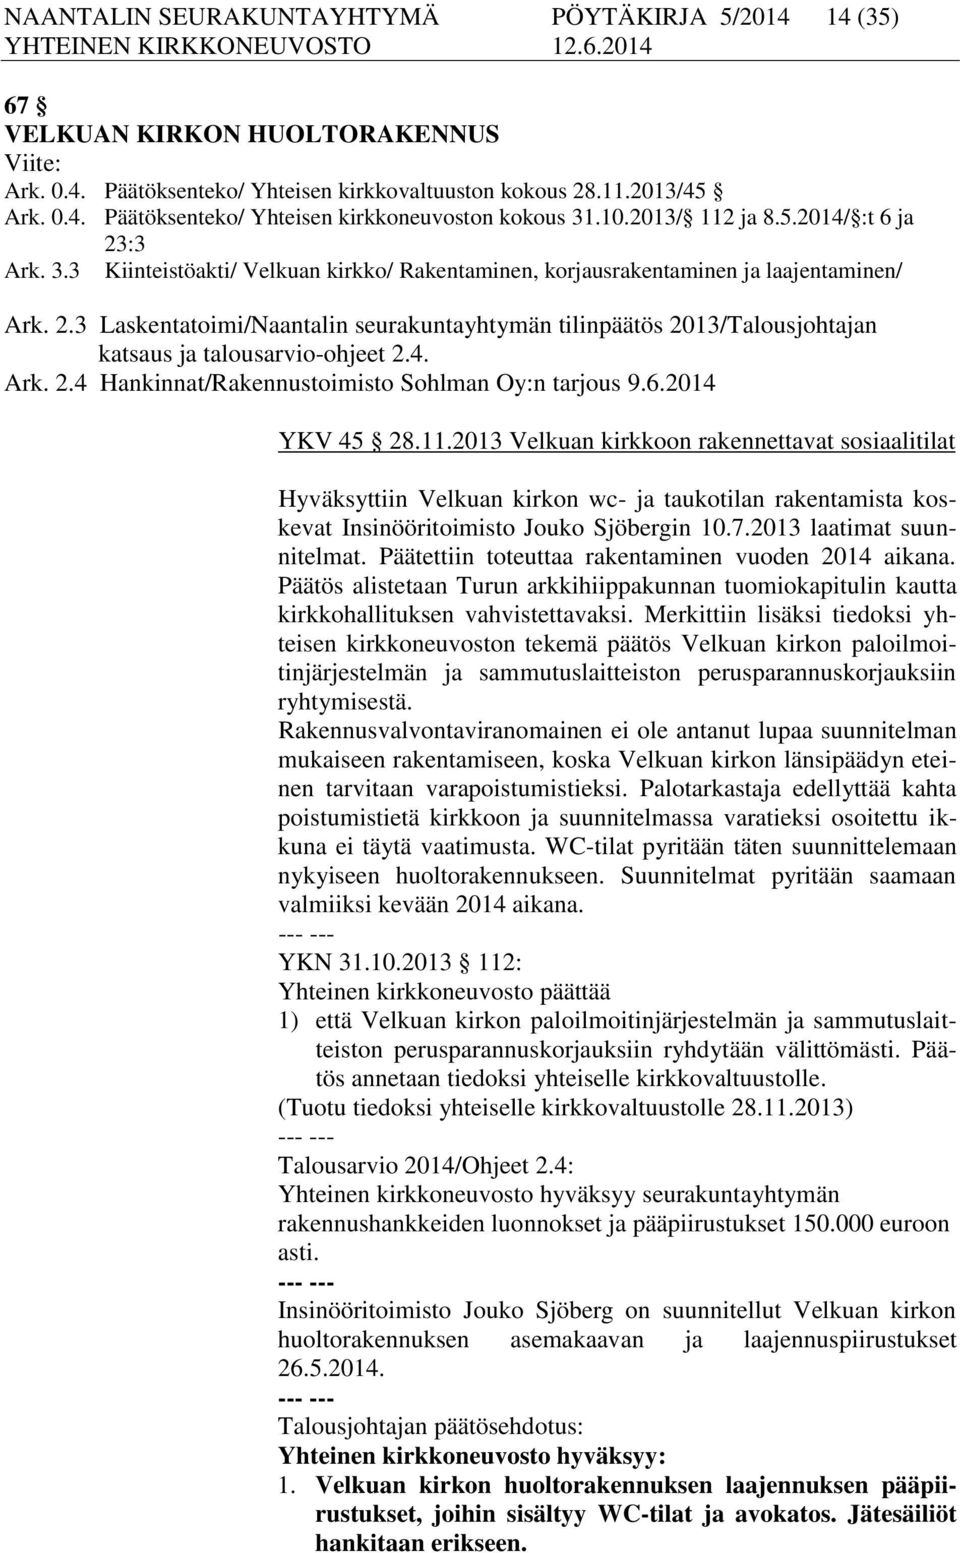 4. Ark. 2.4 Hankinnat/Rakennustoimisto Sohlman Oy:n tarjous 9.6.2014 YKV 45 28.11.